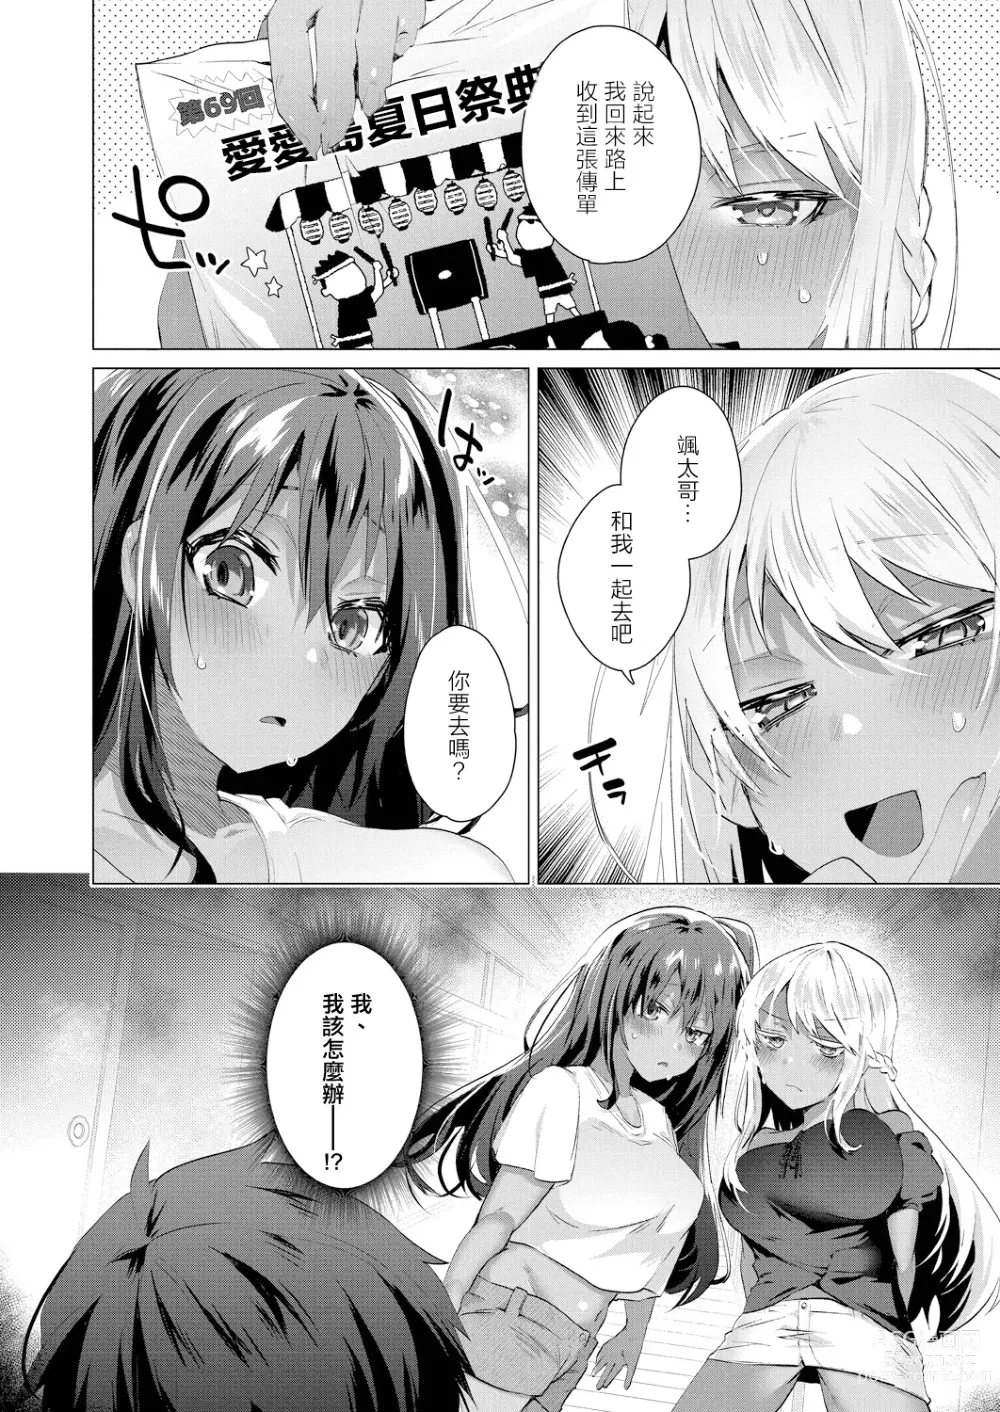 Page 24 of manga Komugiiro no Natsutachi Ch. 2